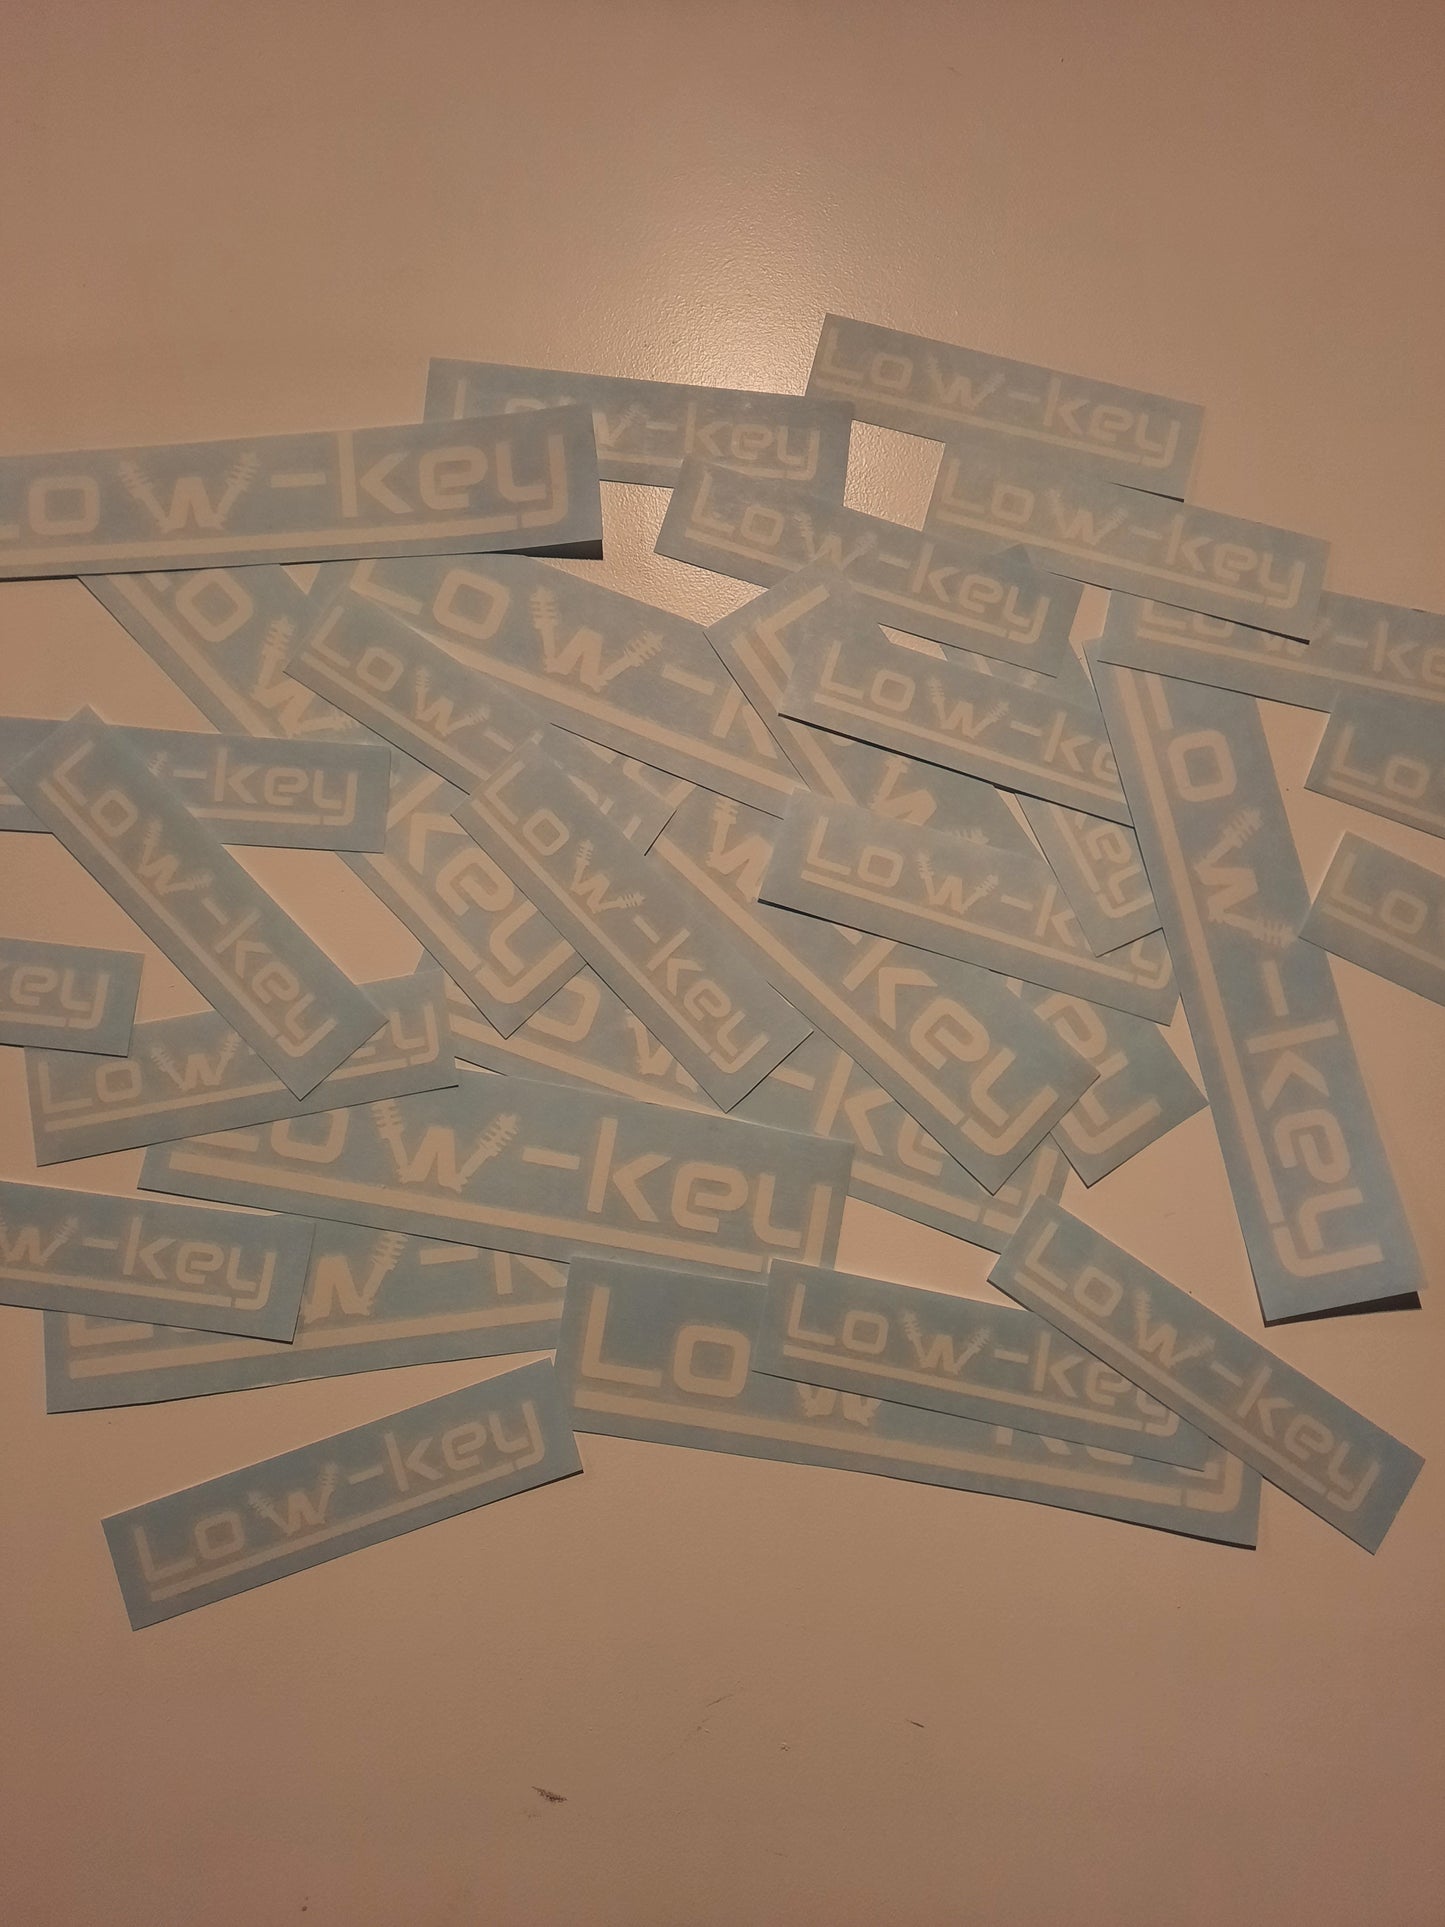 LOW-KEY sticker